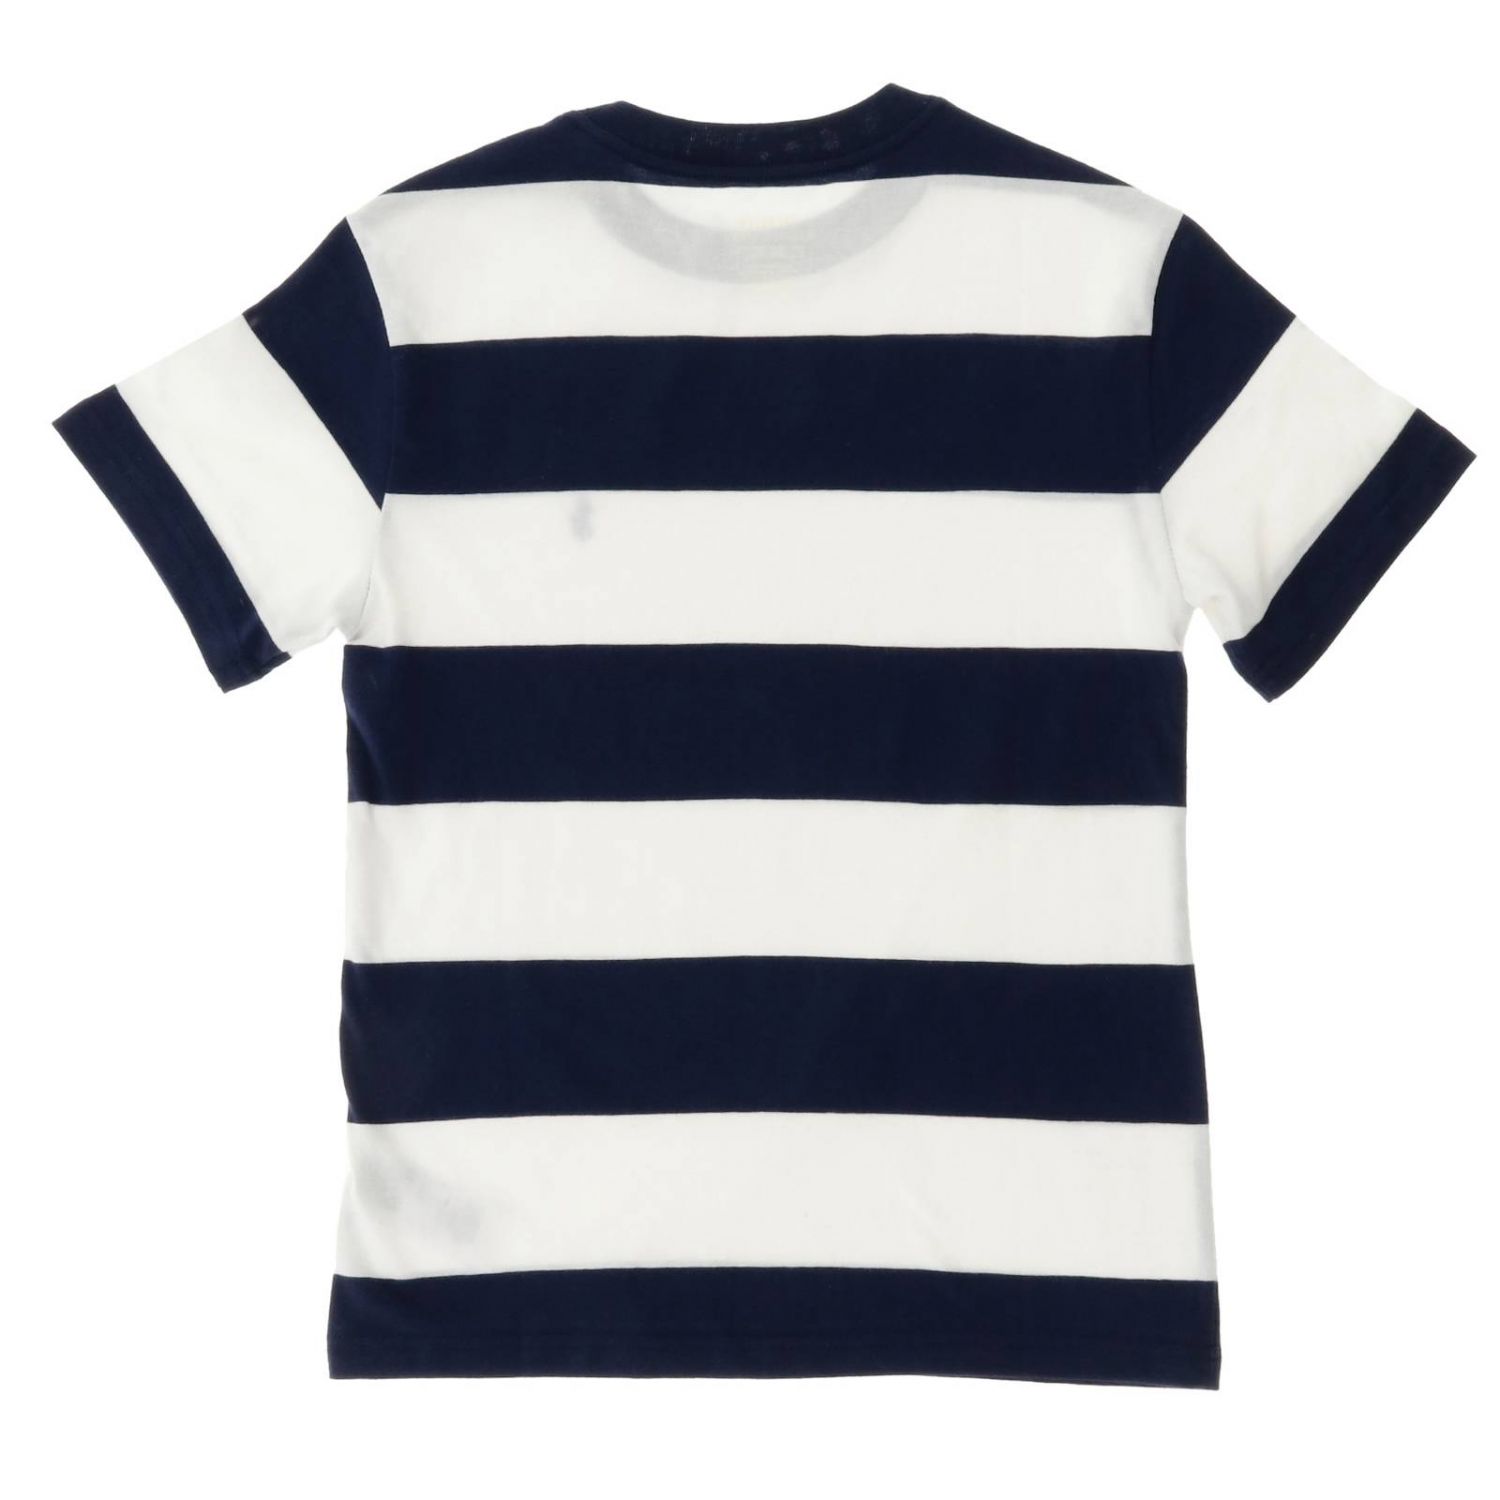 Polo Ralph Lauren Boy Outlet: T-shirt kids | T-Shirt Polo Ralph Lauren ...